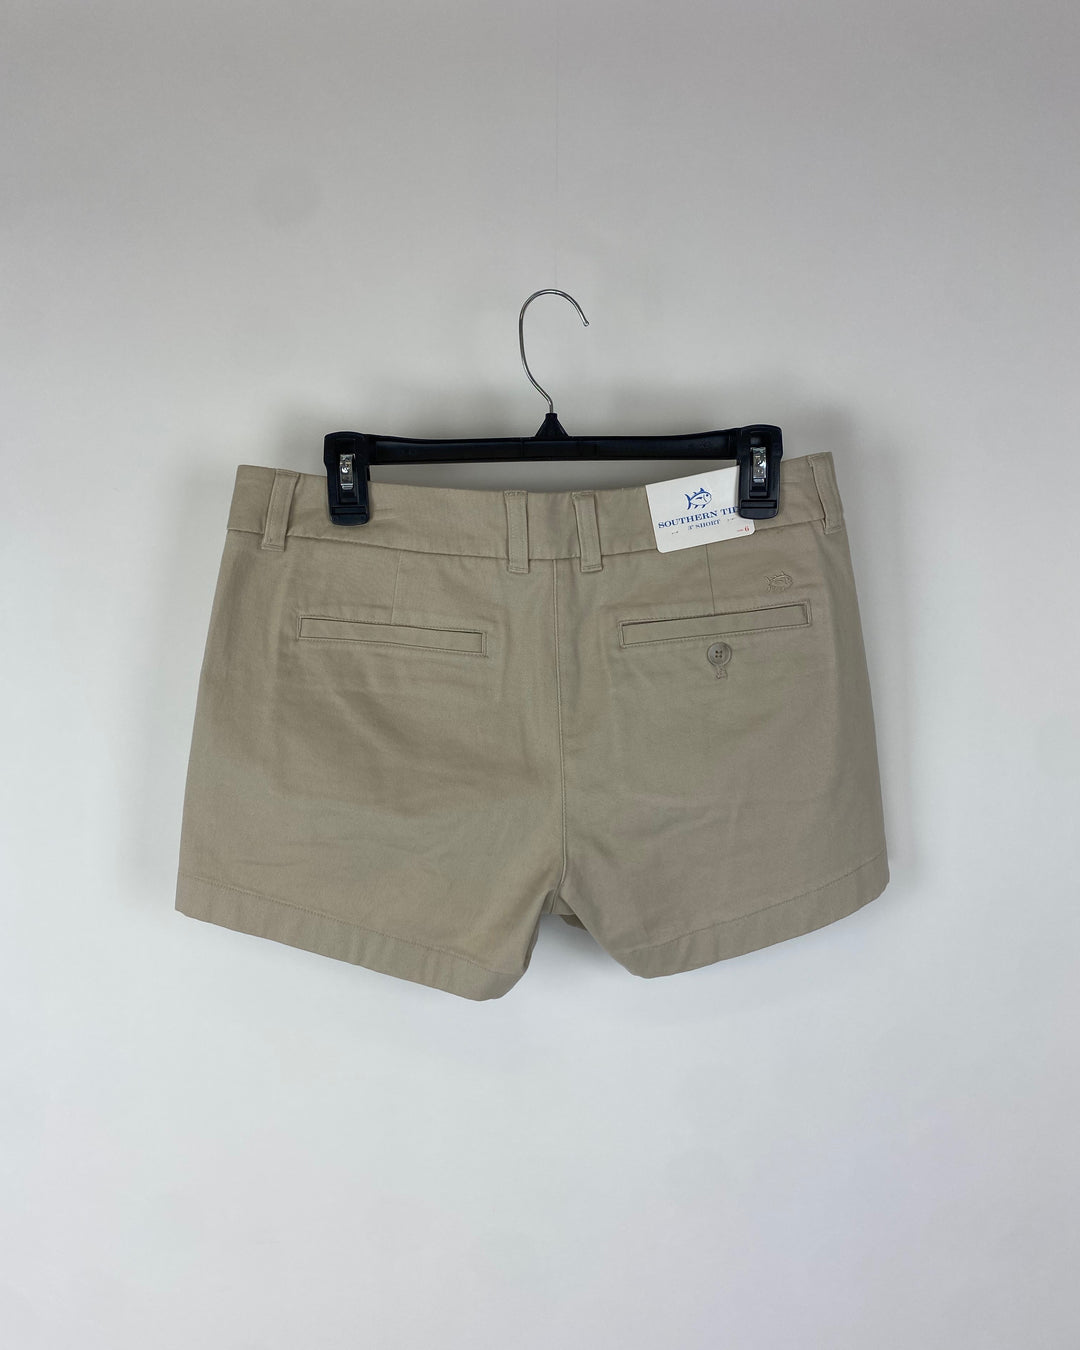 Khaki Shorts - Size 6